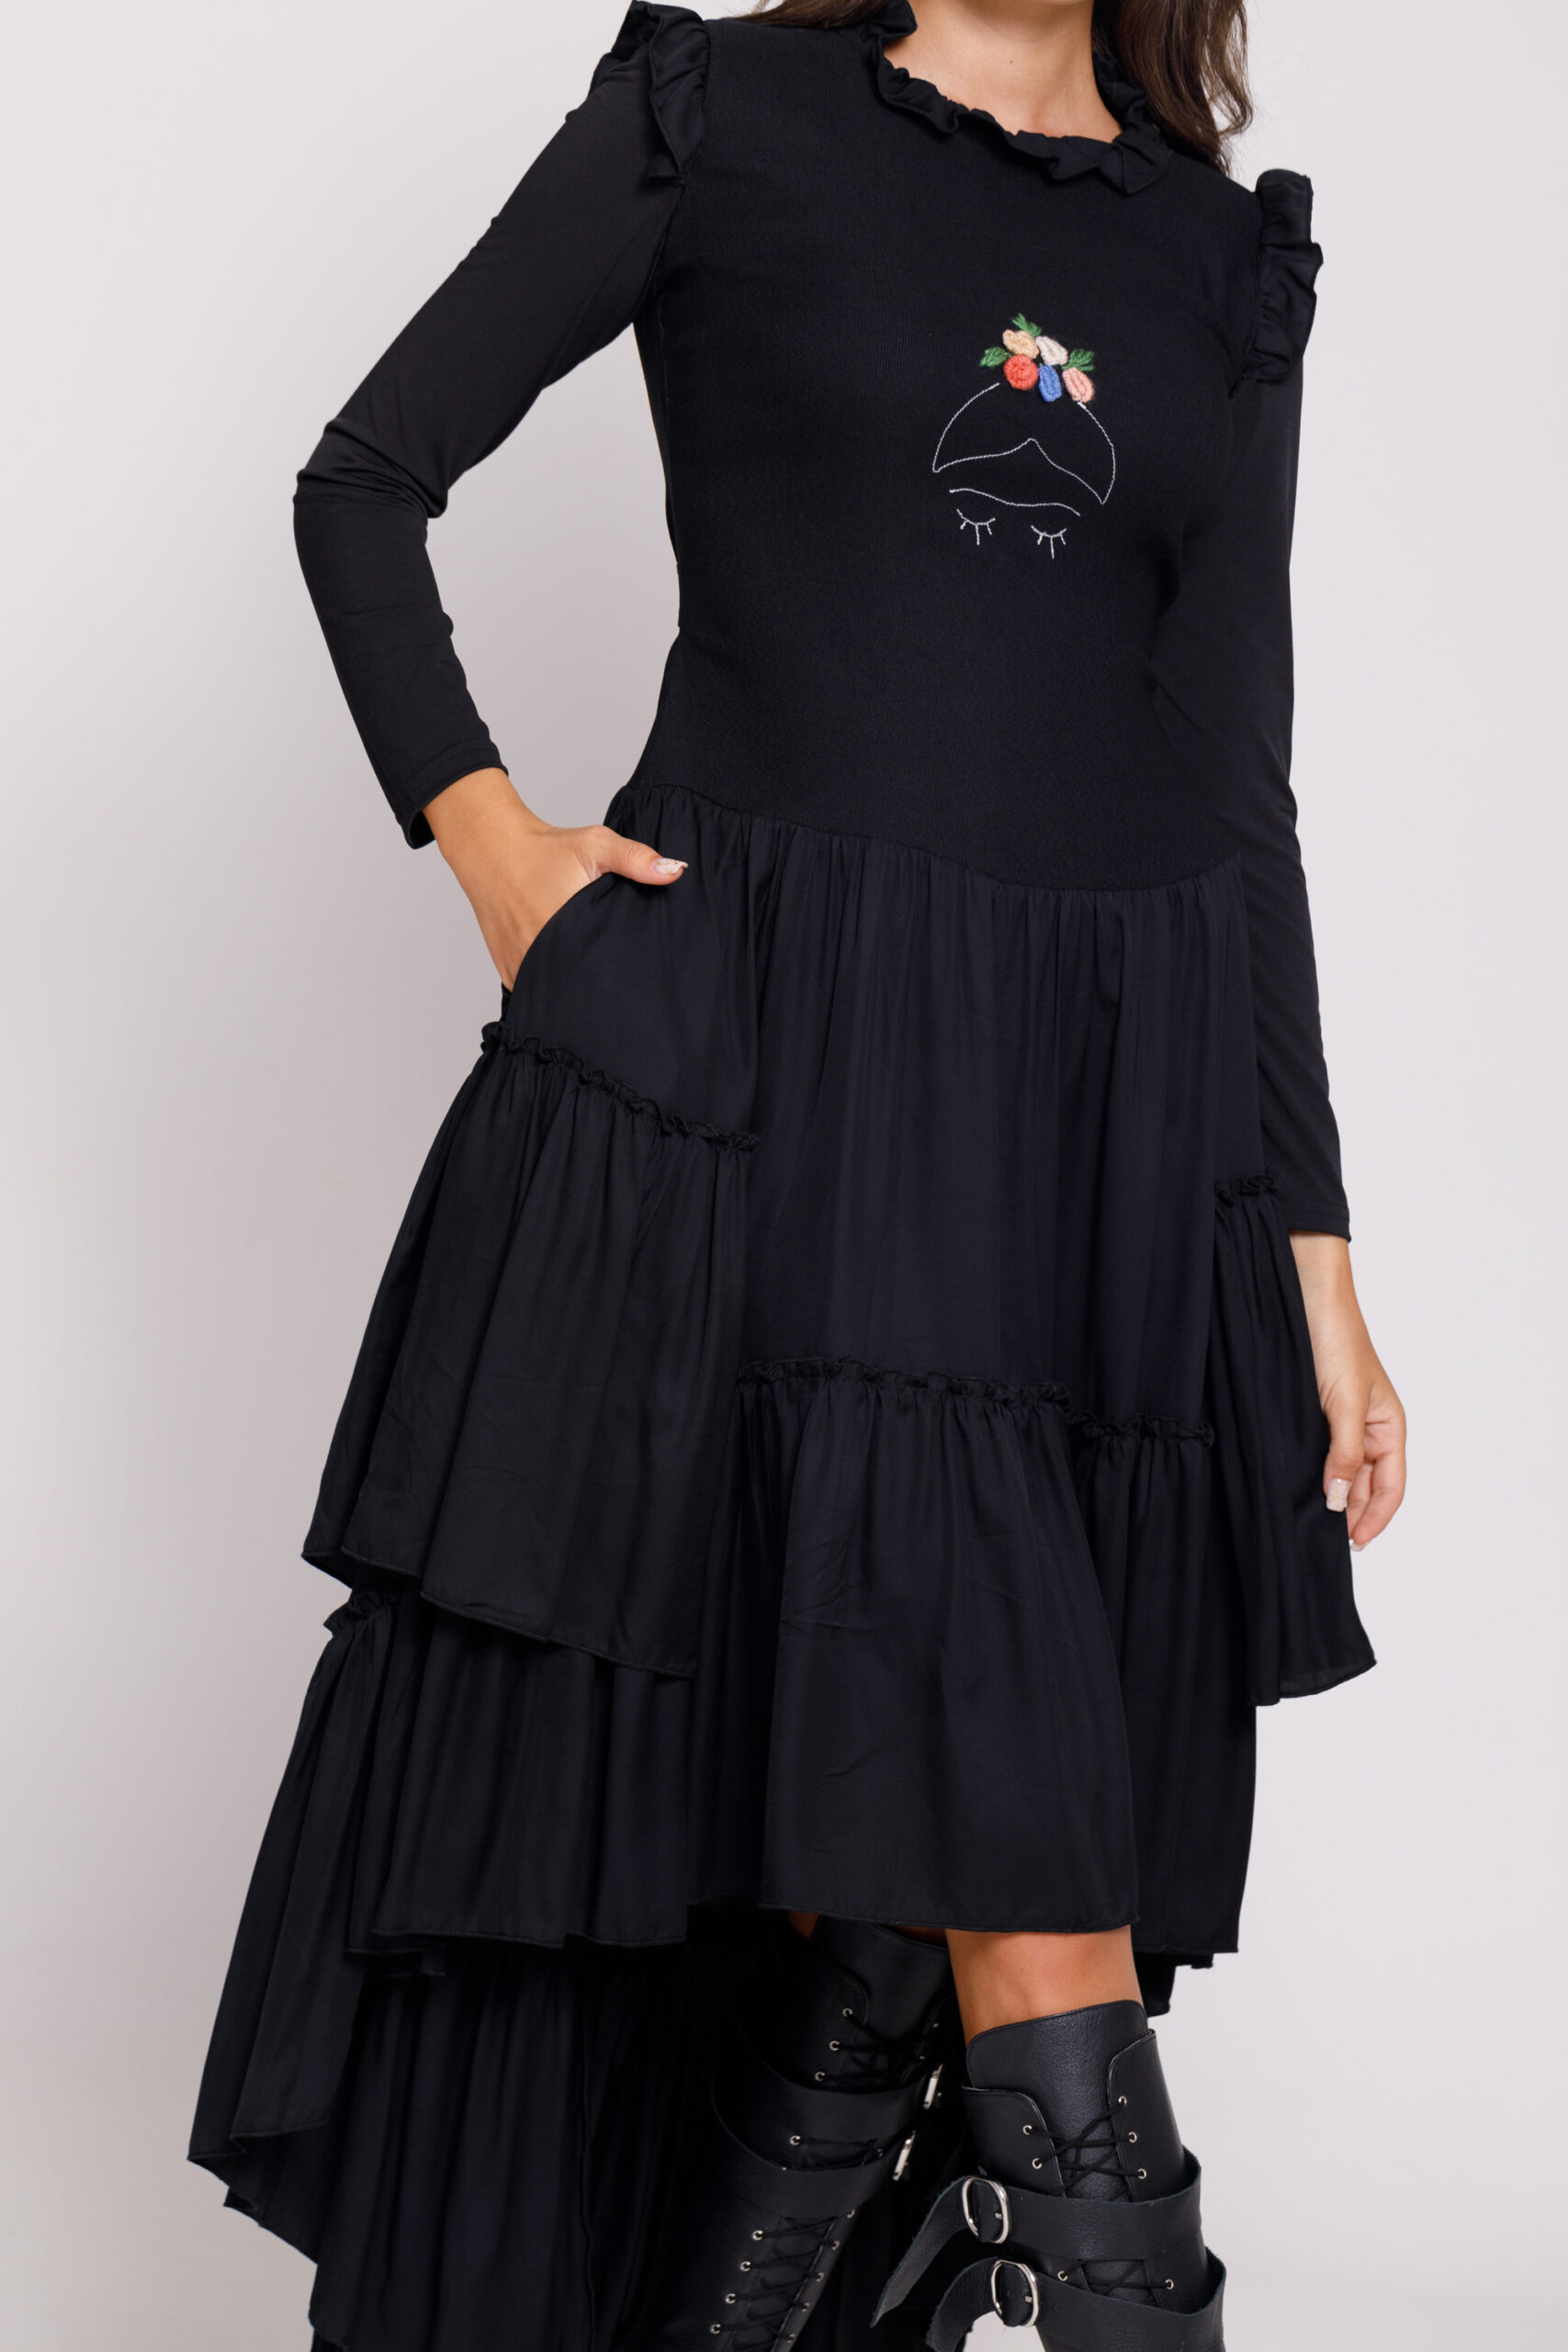 Rochie Valentino casual neagra cu lungime asimetrica. Materiale naturale, design unicat, cu broderie si aplicatii handmade